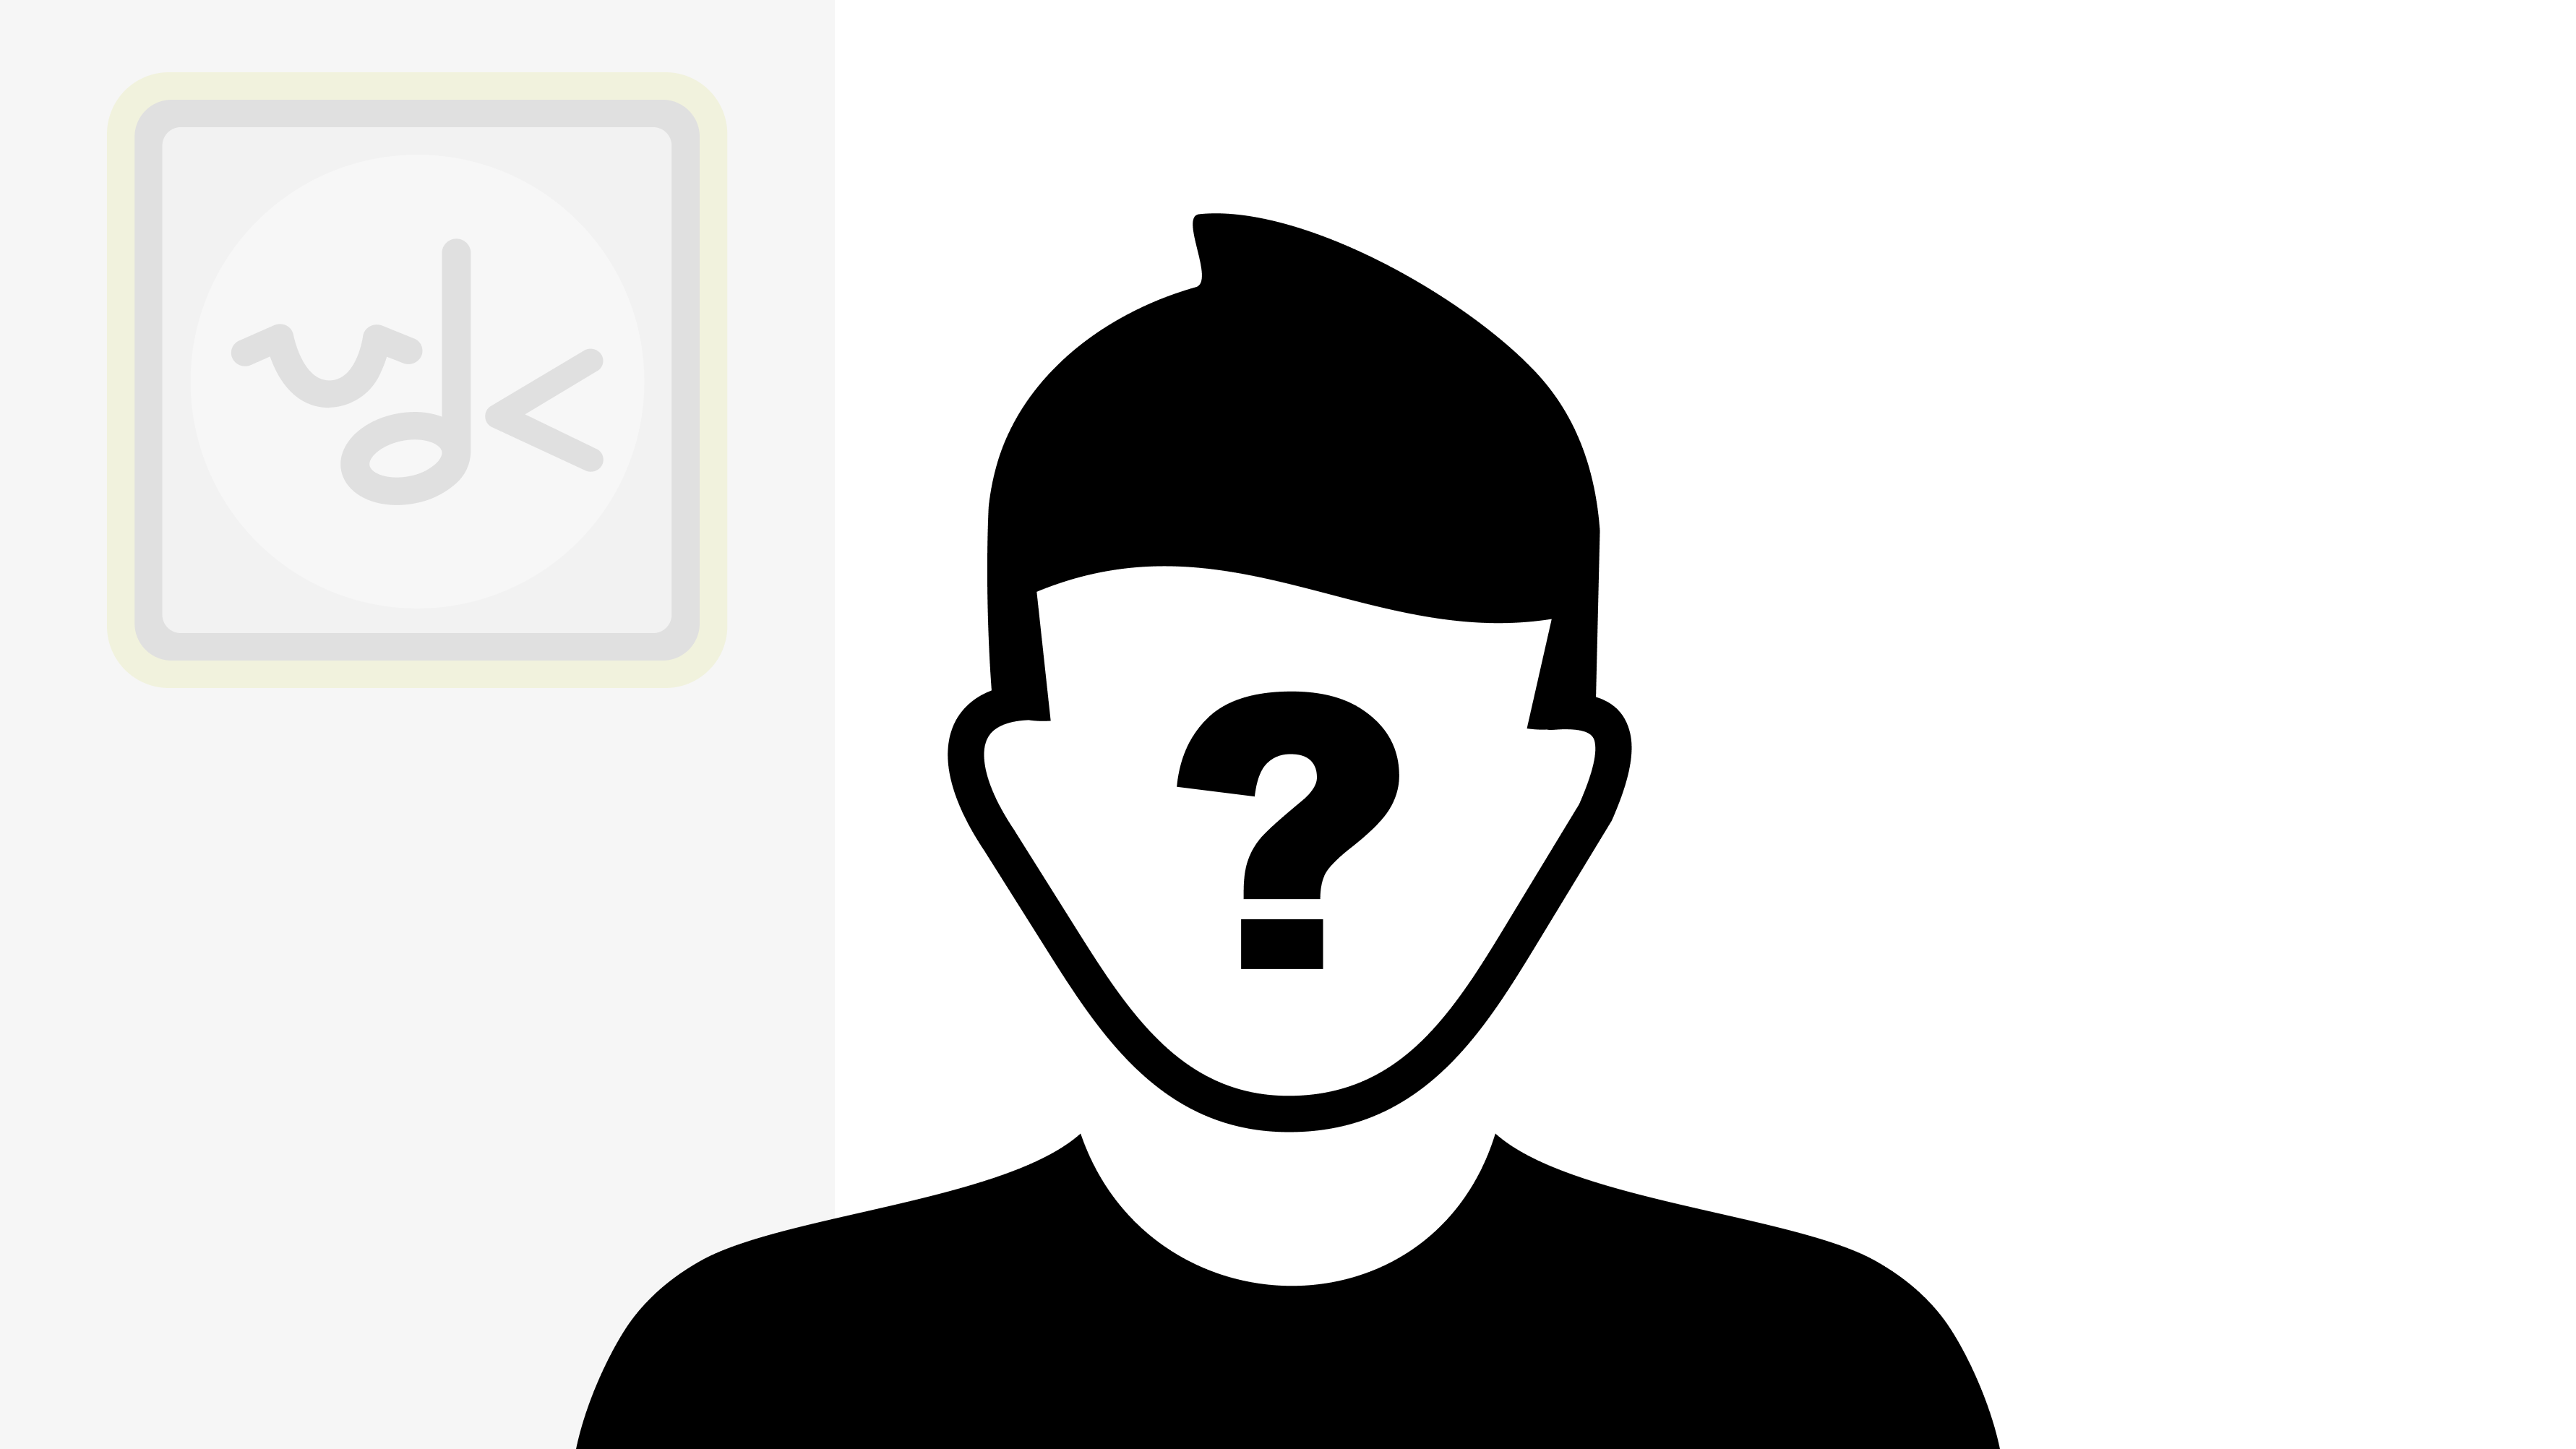 Placeholder afbeelding met hierbij een vector: een persoon met een vraagteken in zijn gezicht en op de achtergrond het logo van VDK.